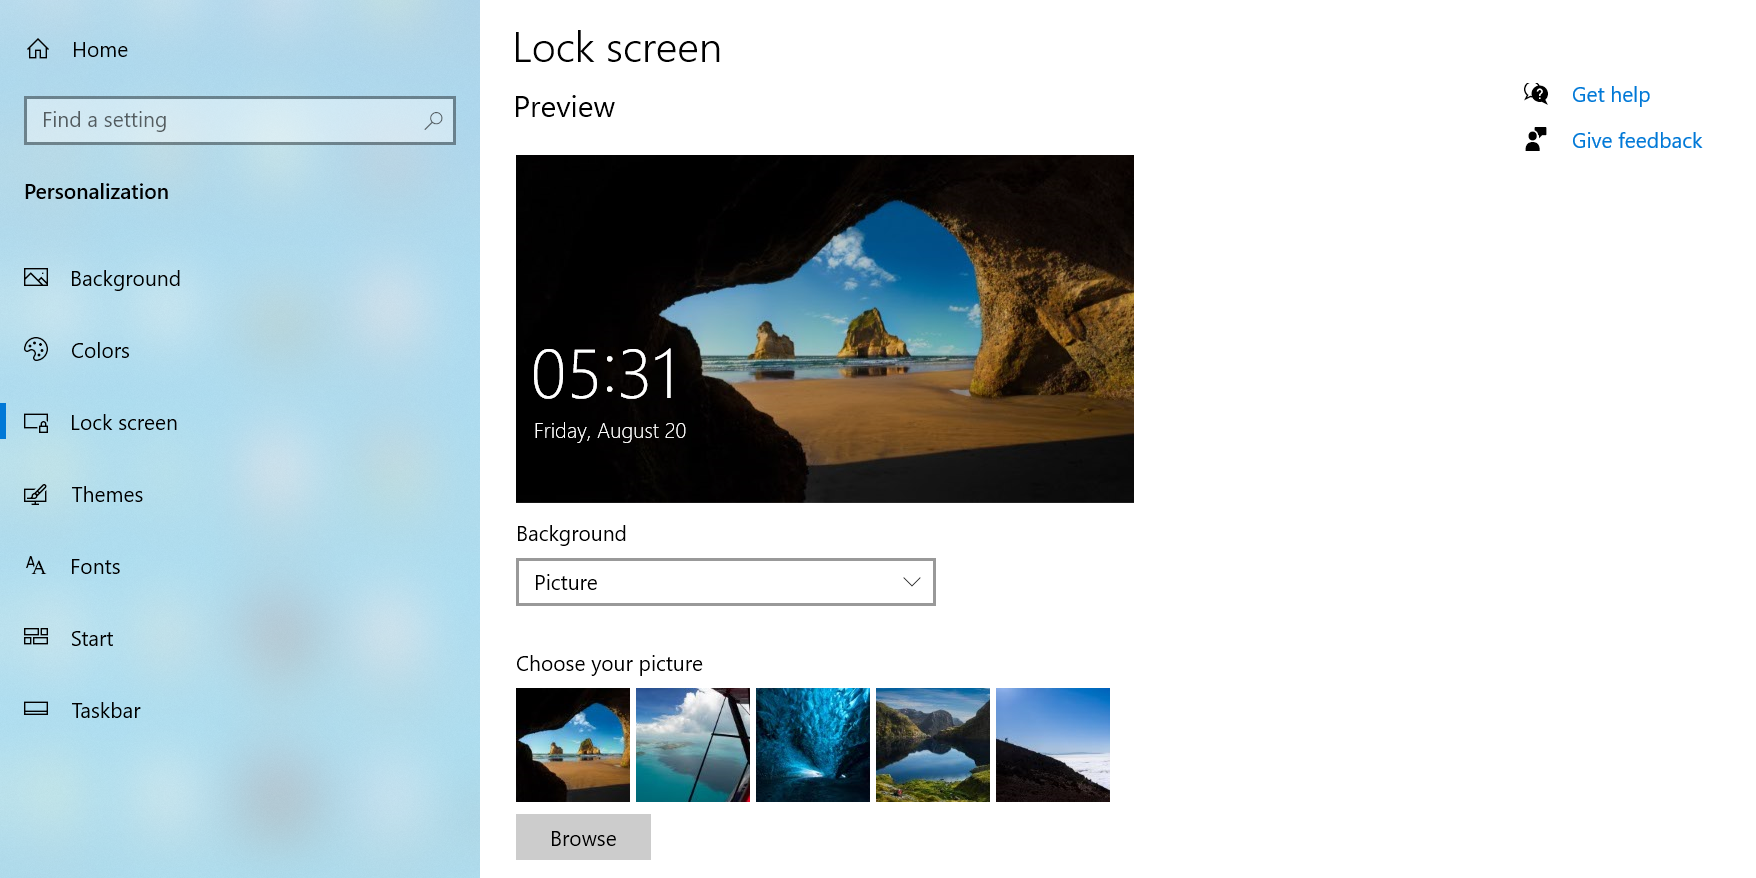 6 set lock screen background - Come scaricare e utilizzare gli sfondi di Windows 11